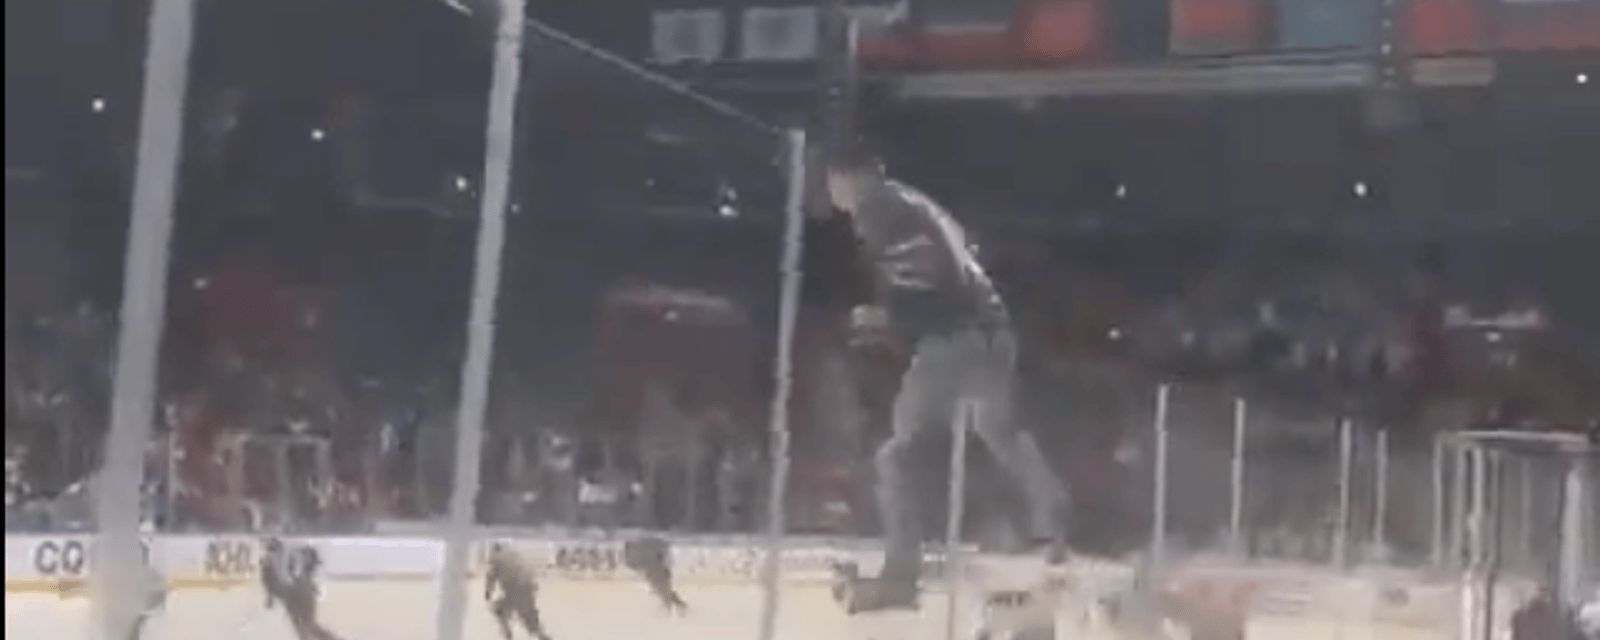 À voir: un partisan de la KHL saute par dessus la baie vitrée en plein match